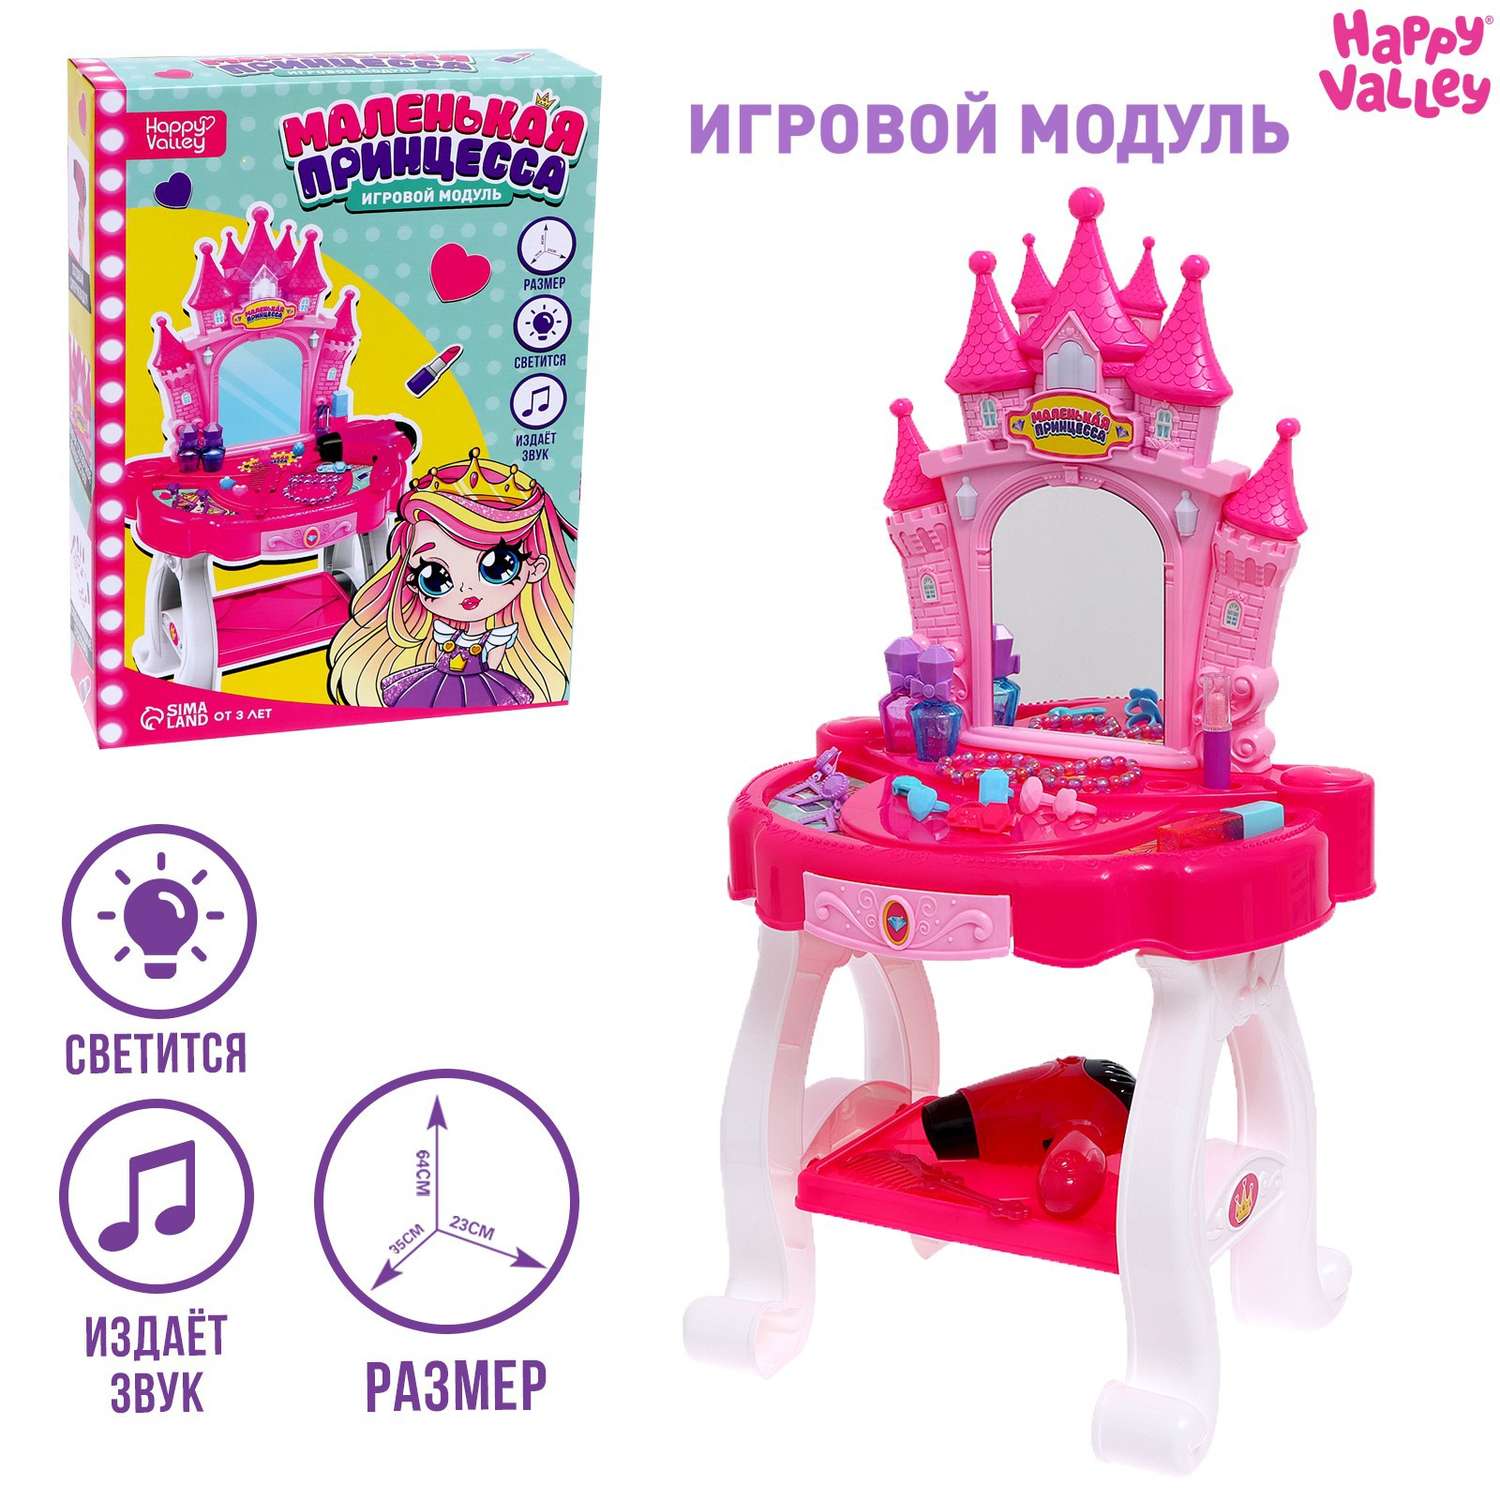 Игровой модуль Happy Valley «Маленькая принцесса» с аксессуарами - фото 1